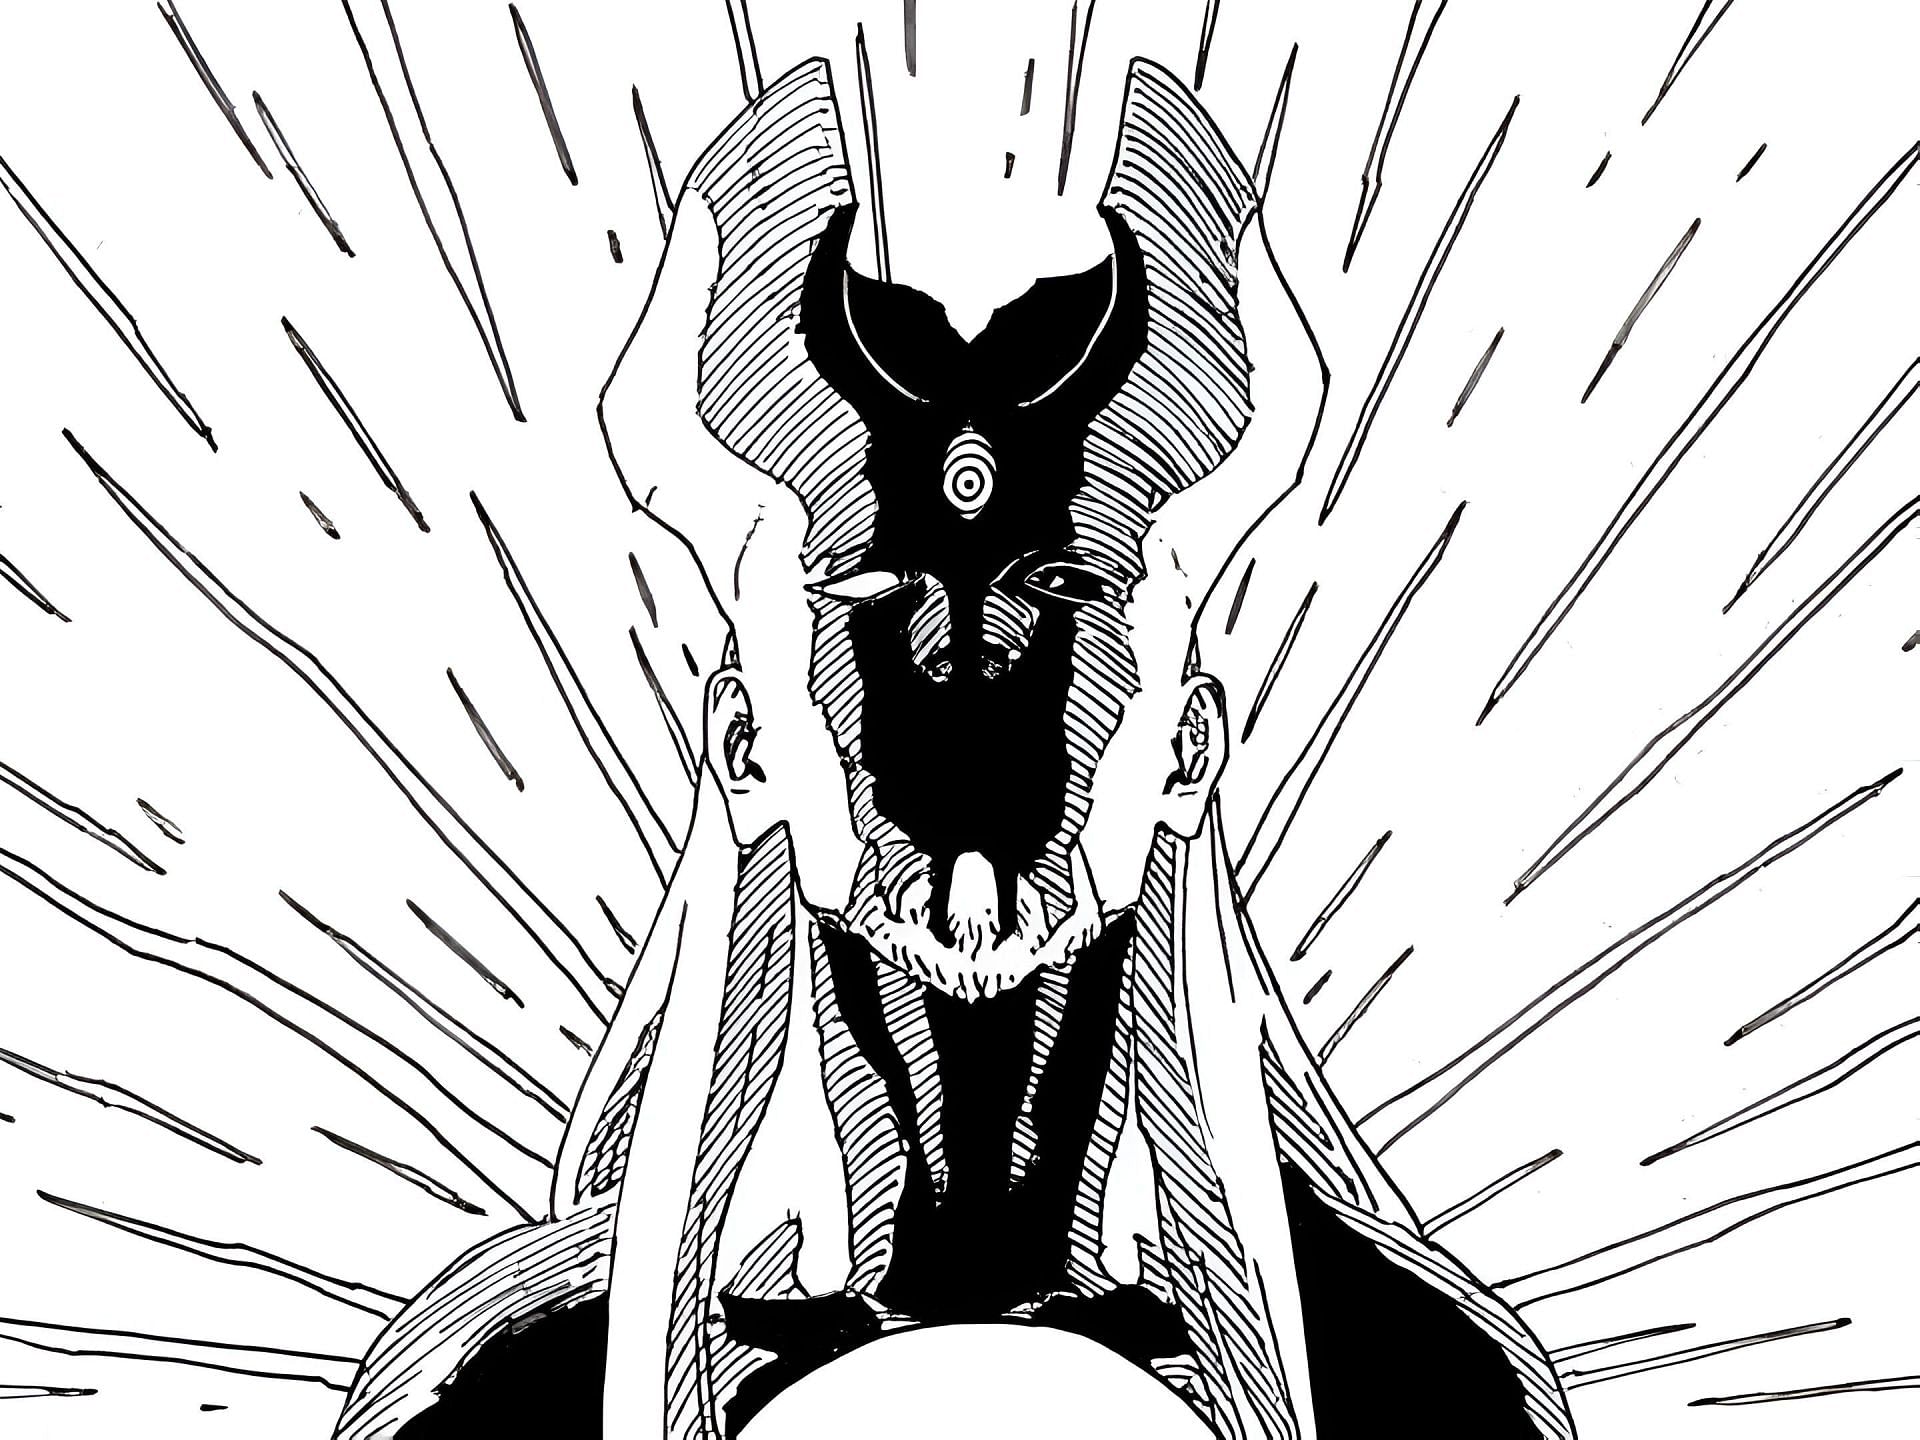 Shibai as seen in the manga (Image via Shueisha)